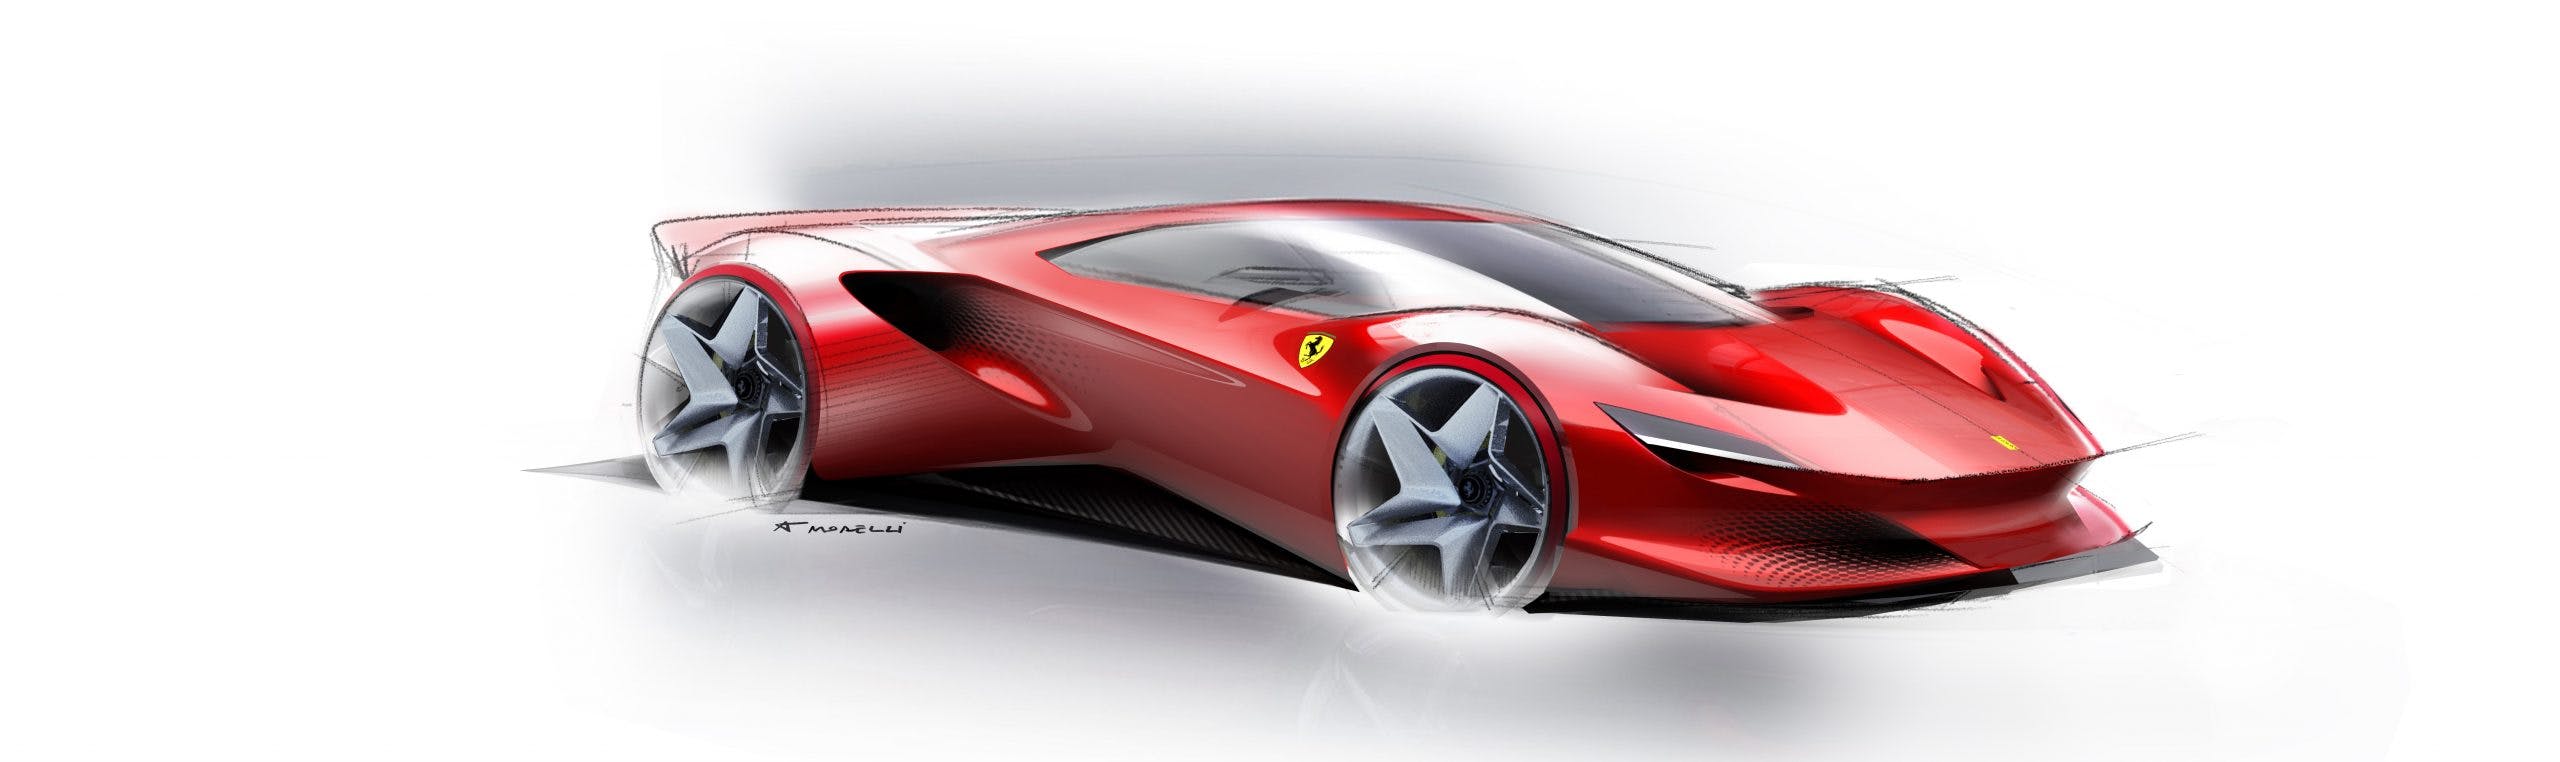 Ferrari SP48 Unica design sketch